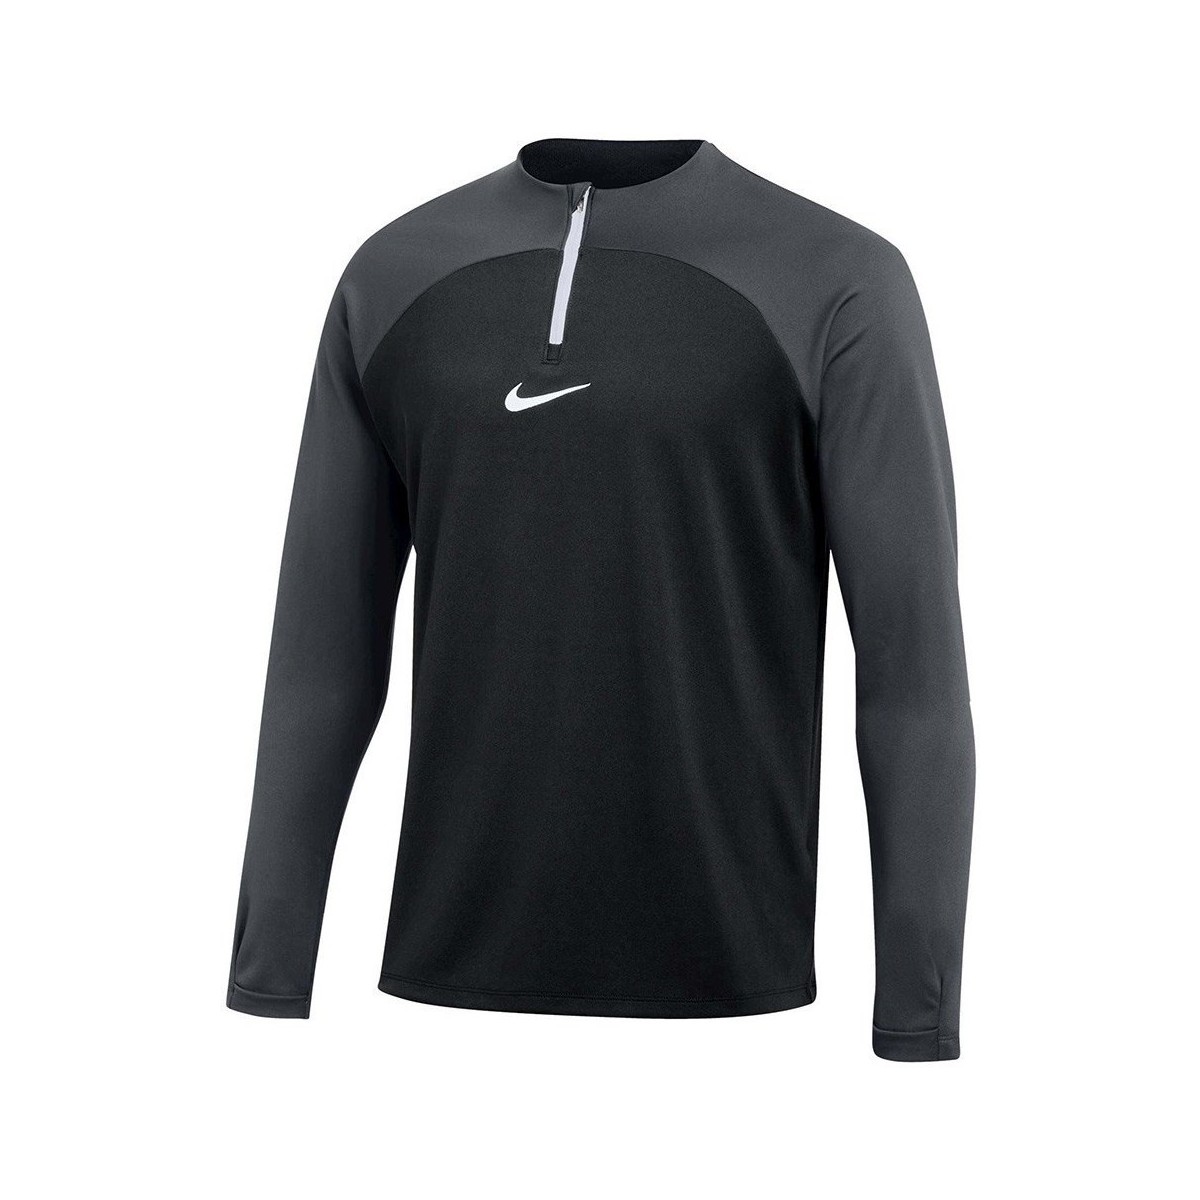 Vêtements Homme Sweats Nike Drifit Academy Gris, Noir